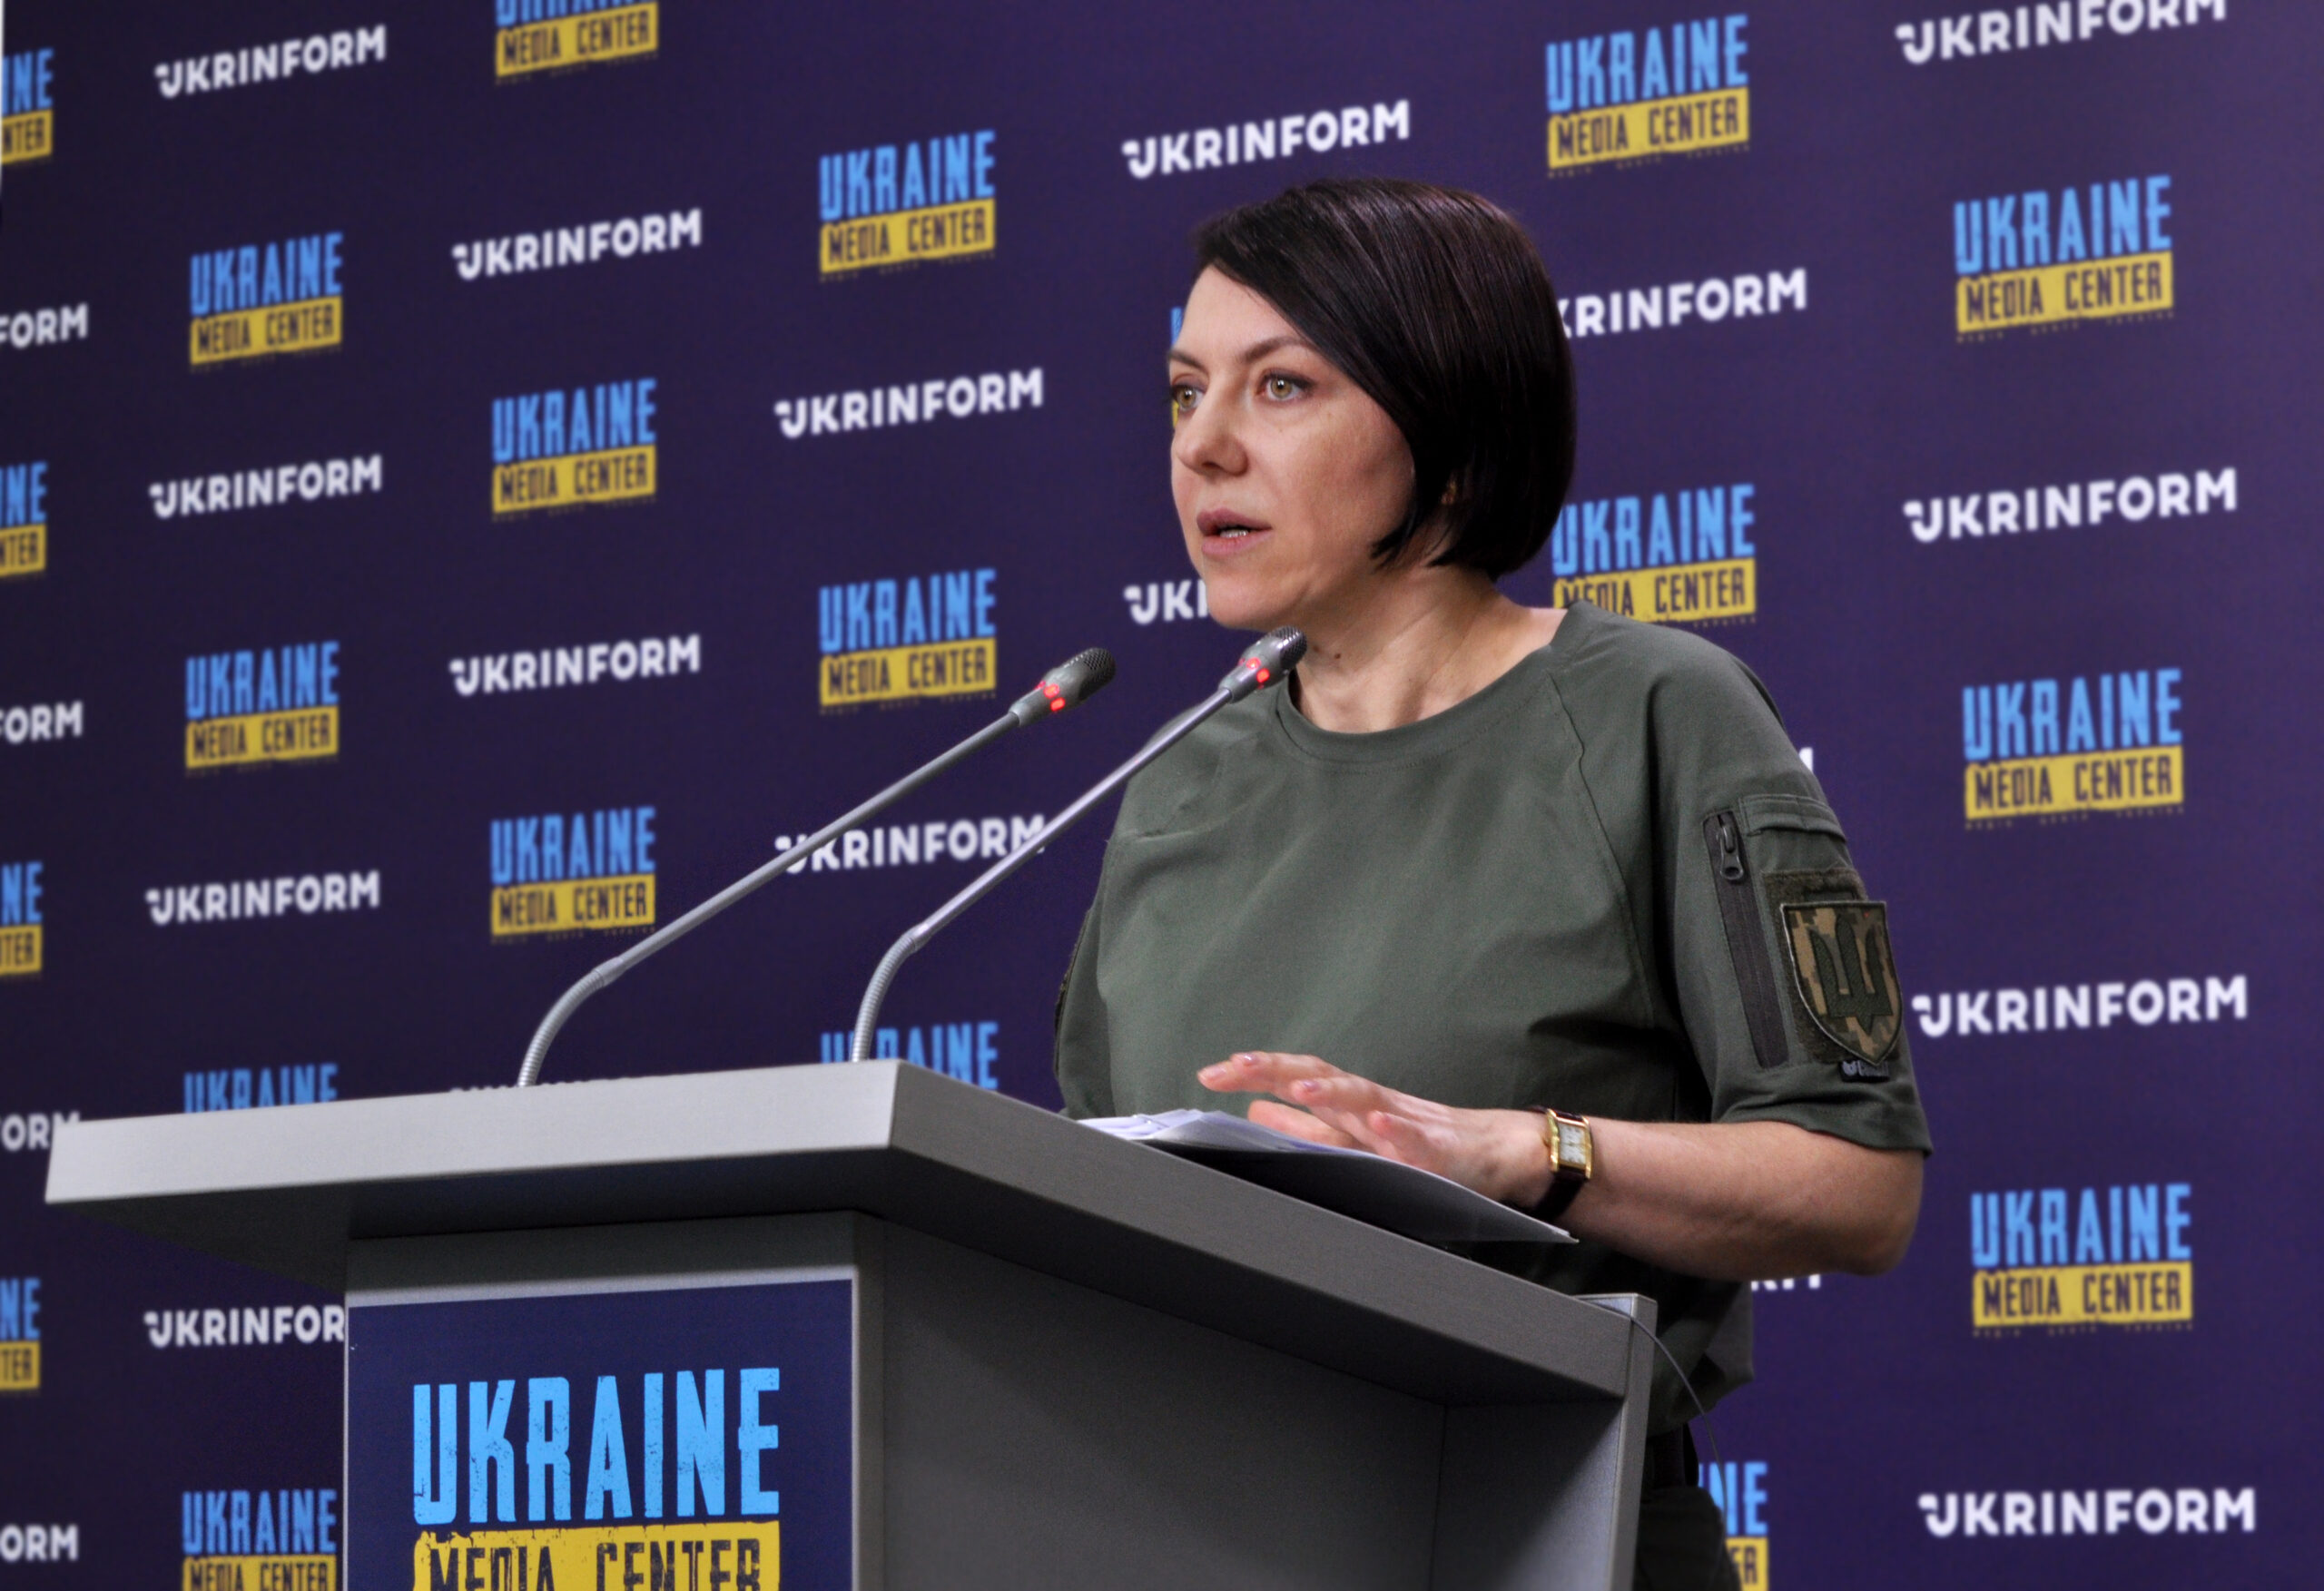 Ганна Маляр, заступниця міністра оборони України в Медіацентрі Україна